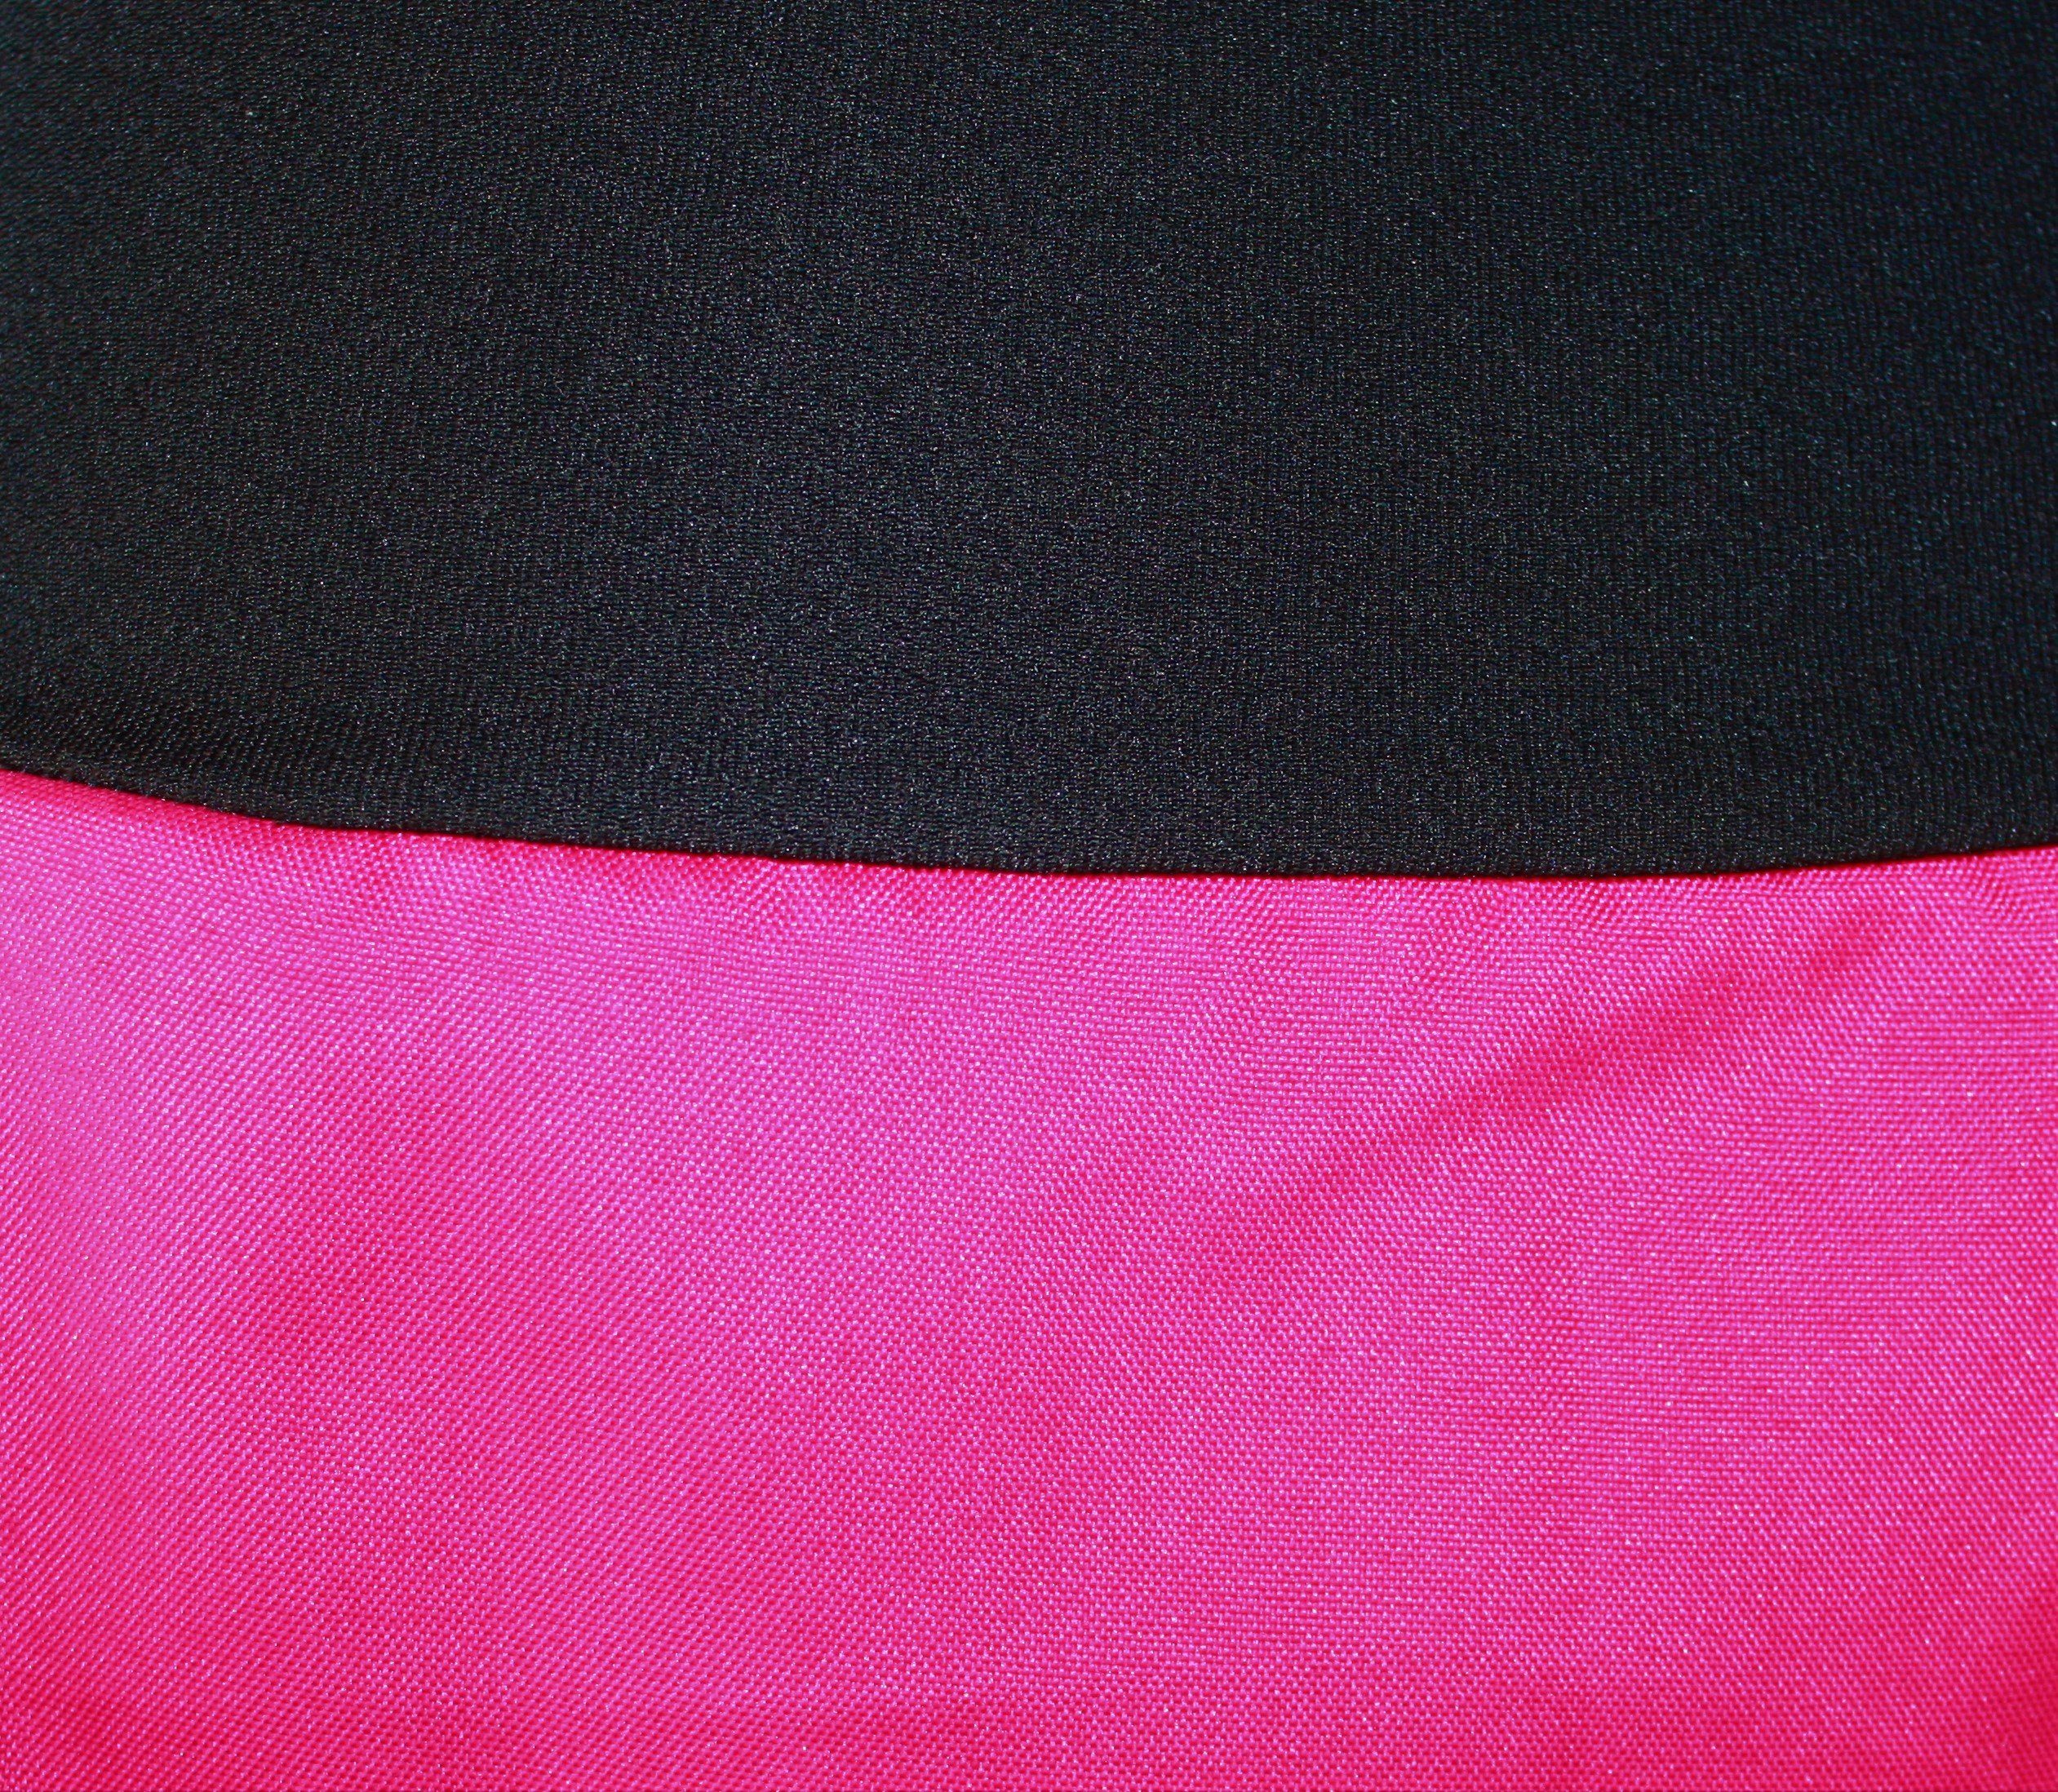 A-Linien-Rock design Pink Tulpenrock Rot 54cm oder dunkle